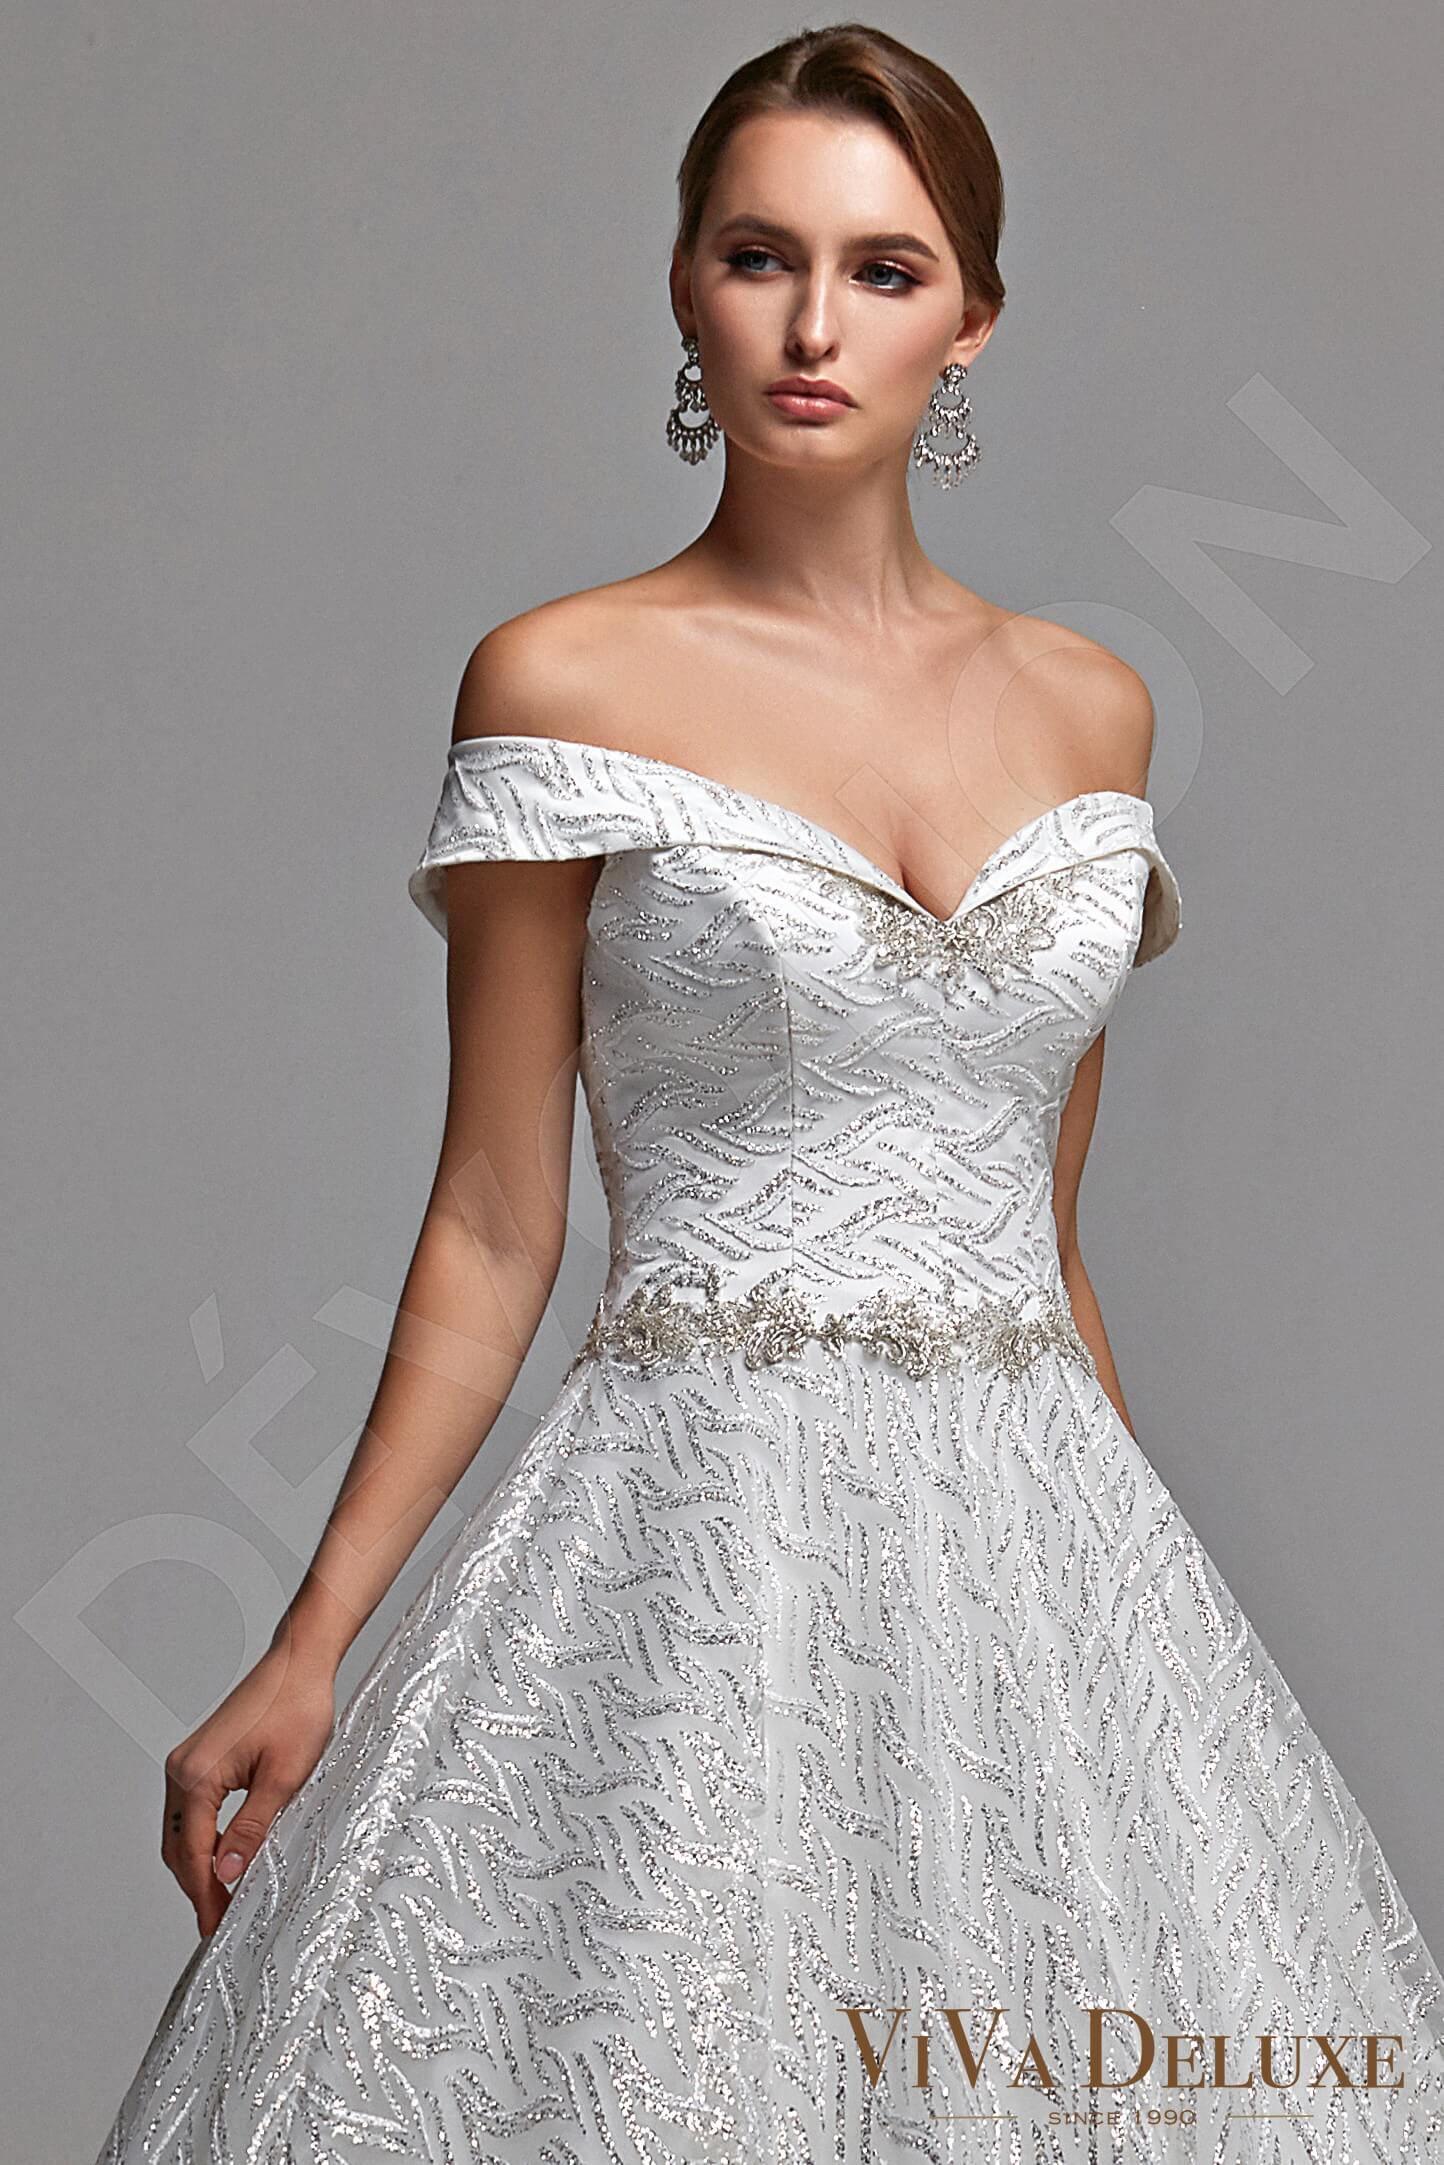 Perla Open back Princess/Ball Gown Sleeveless Wedding Dress 2